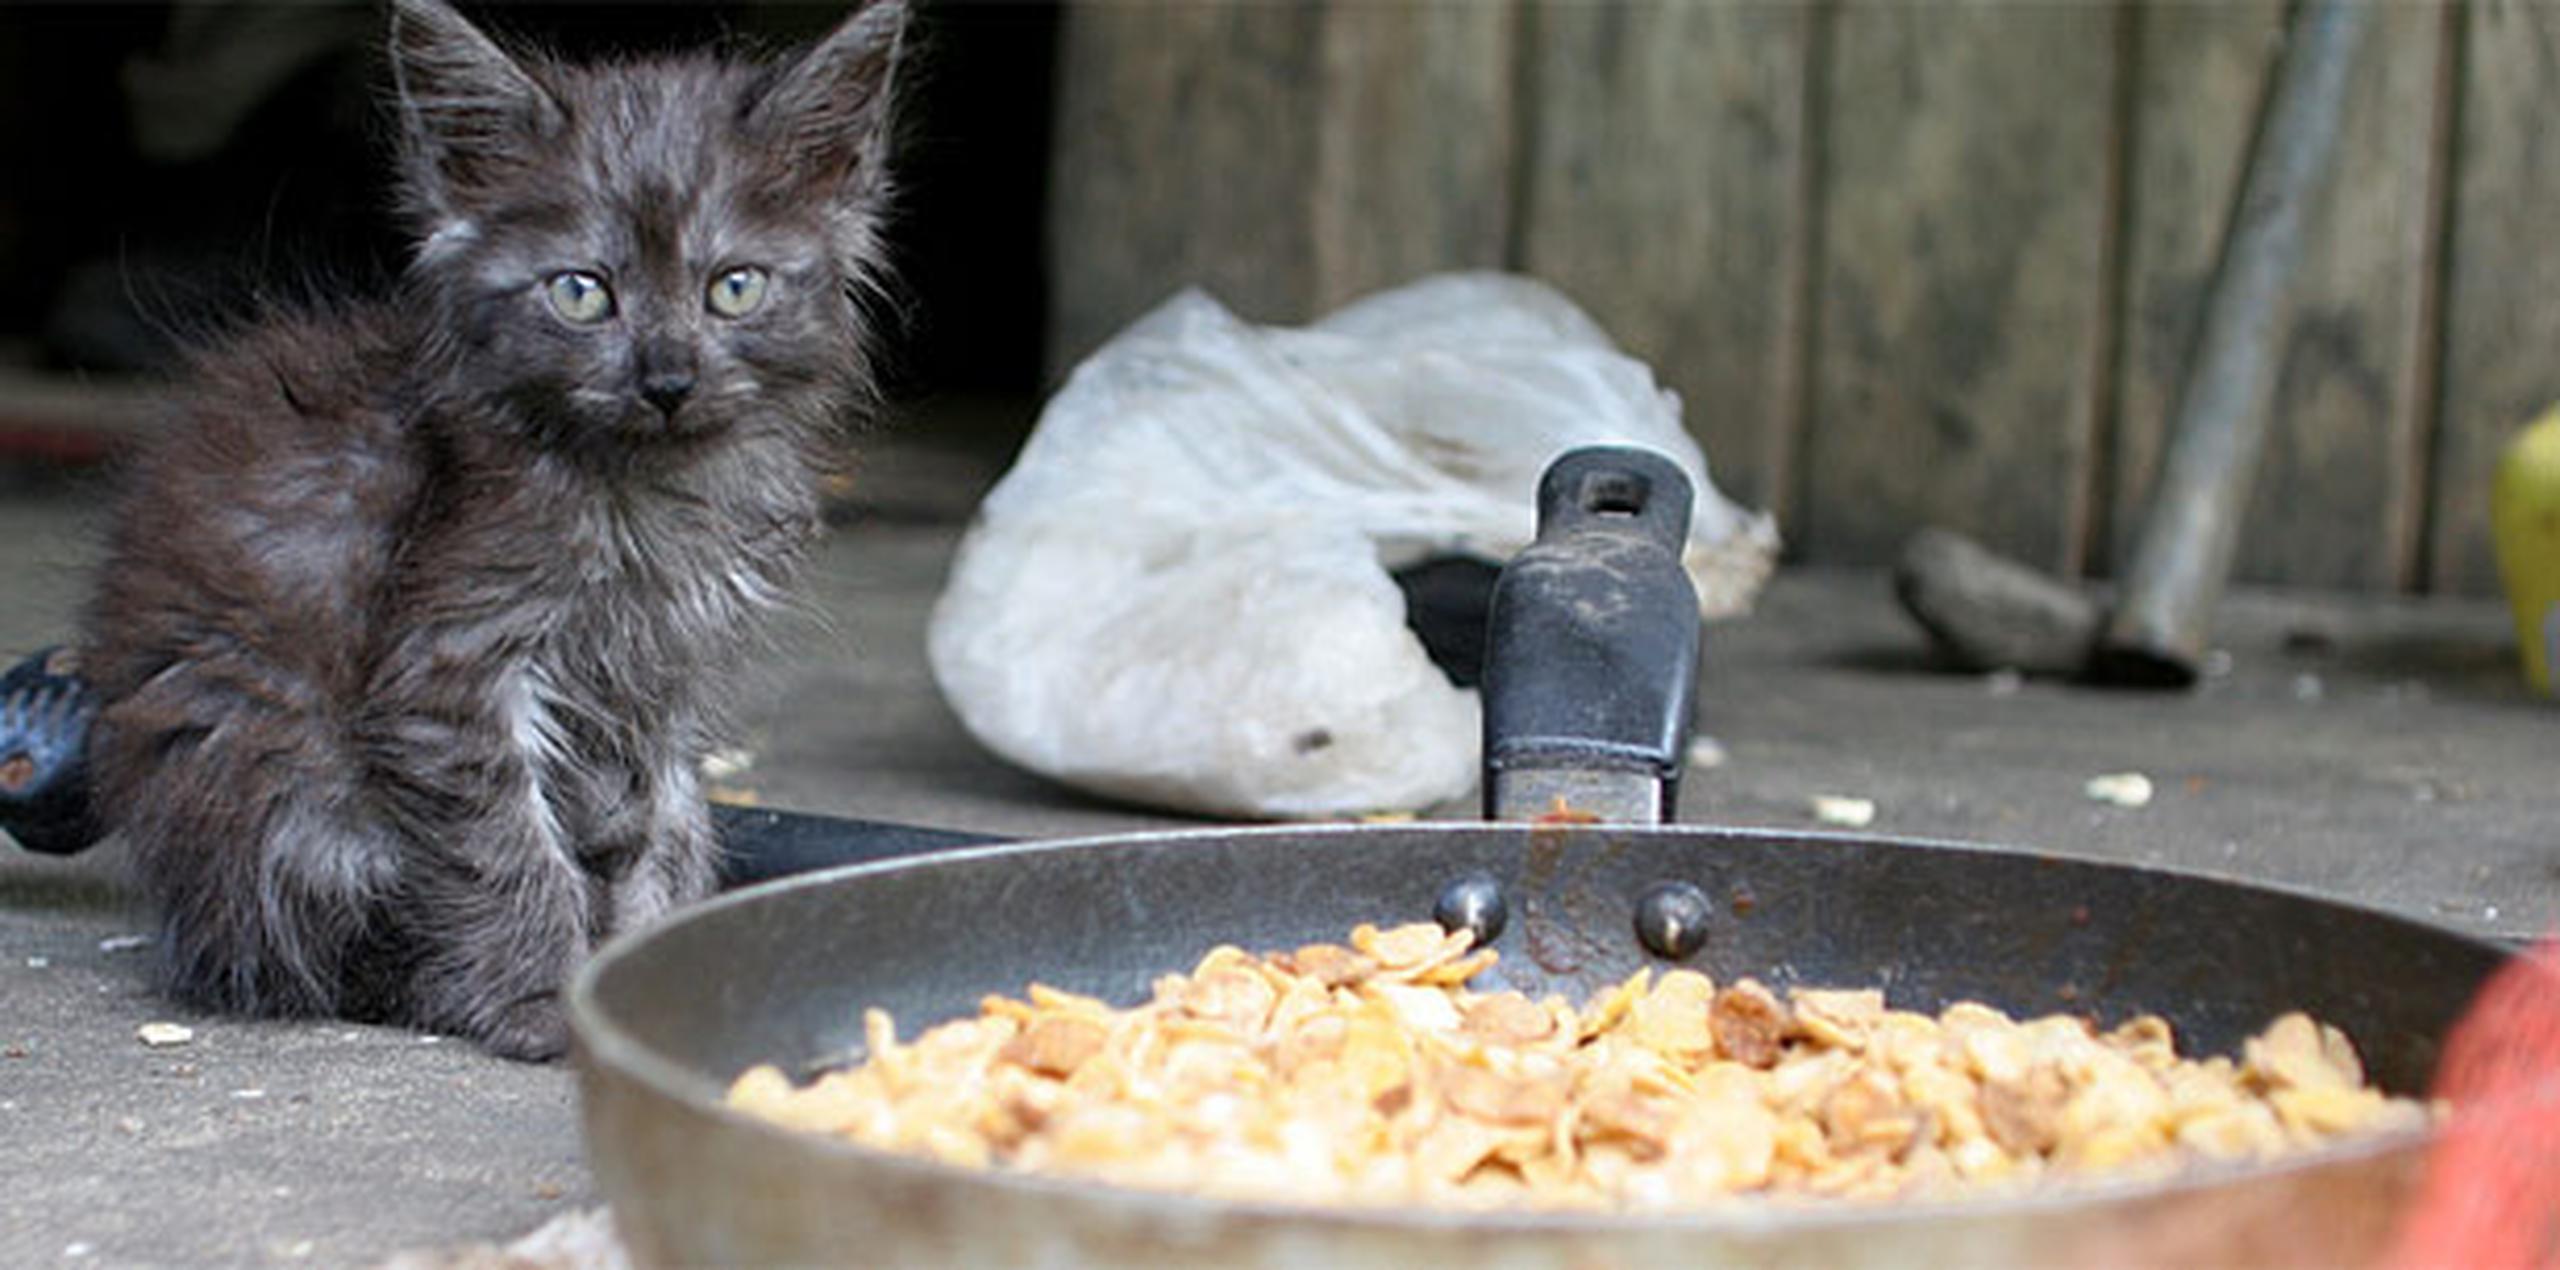 Los gatos se pueden envenenar con la cebolla y ajo, tan presentes en nuestra cocina, ya sea crudos o cocidos. (Archivo)